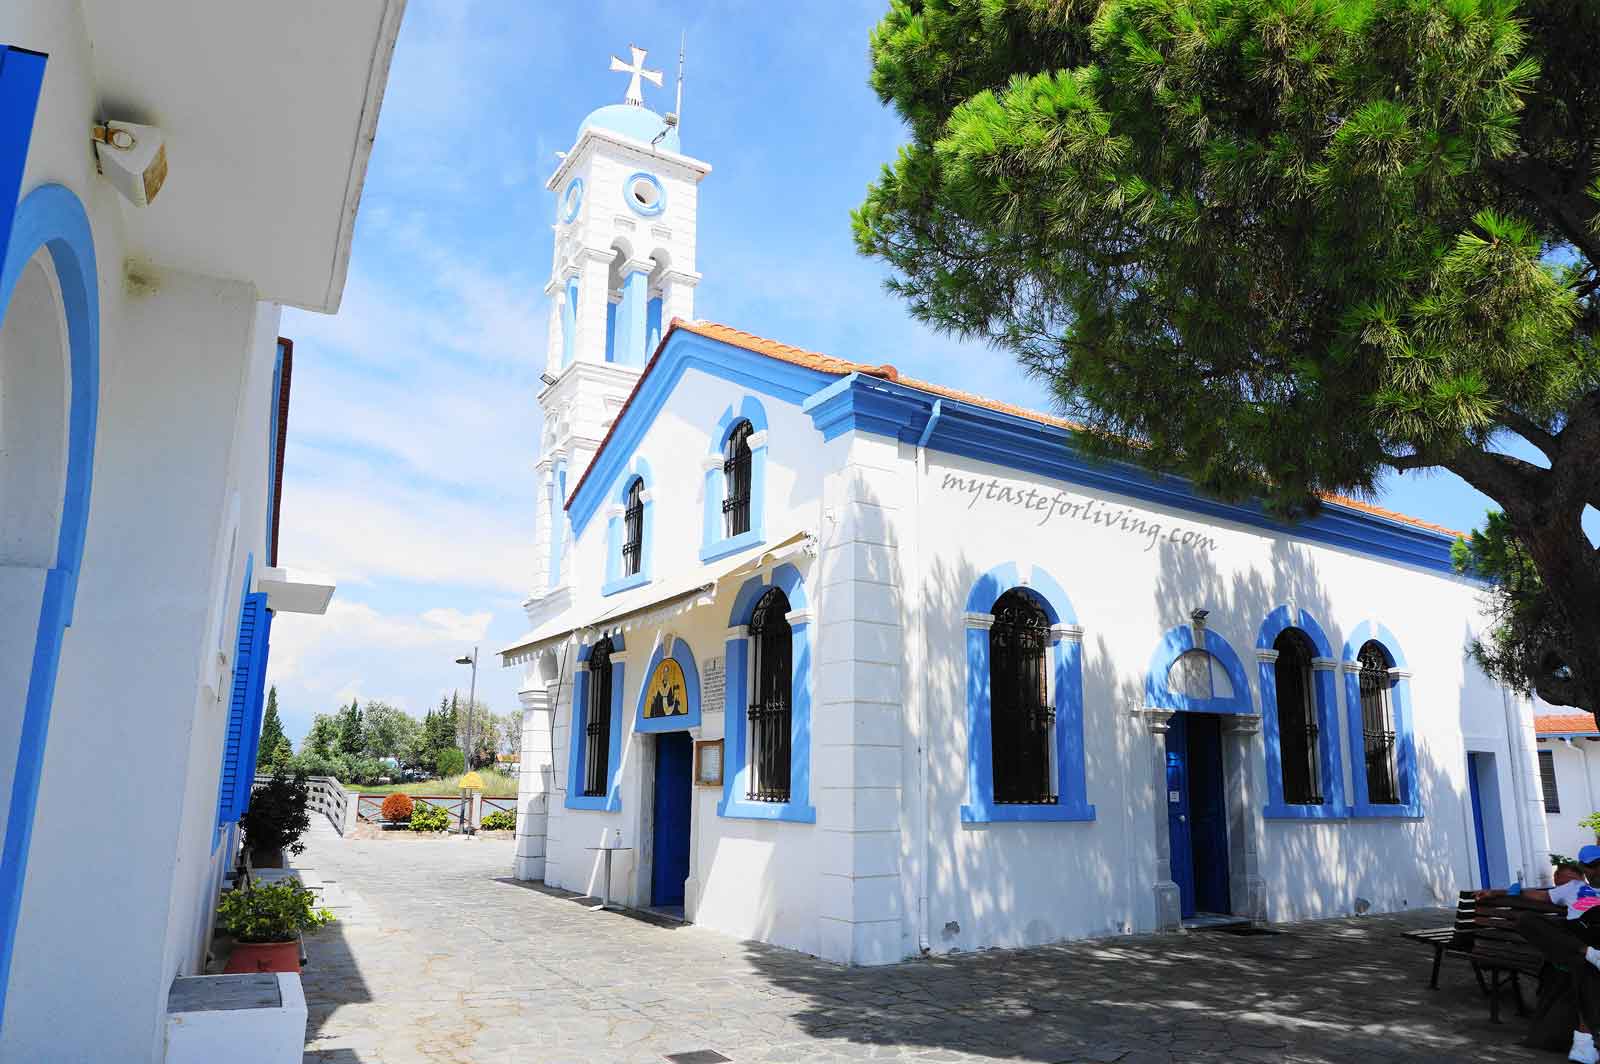 Манастирът "Свети Никола" се намира на малък остров в езерото Вистонида, близо до рибарското селище Порто Лагос, Гърция. Той привлича голям брой посетители и поклонници всяка година поради екзотичната гледка и пейзаж към Тракийско море, на която хората могат да се насладят. 